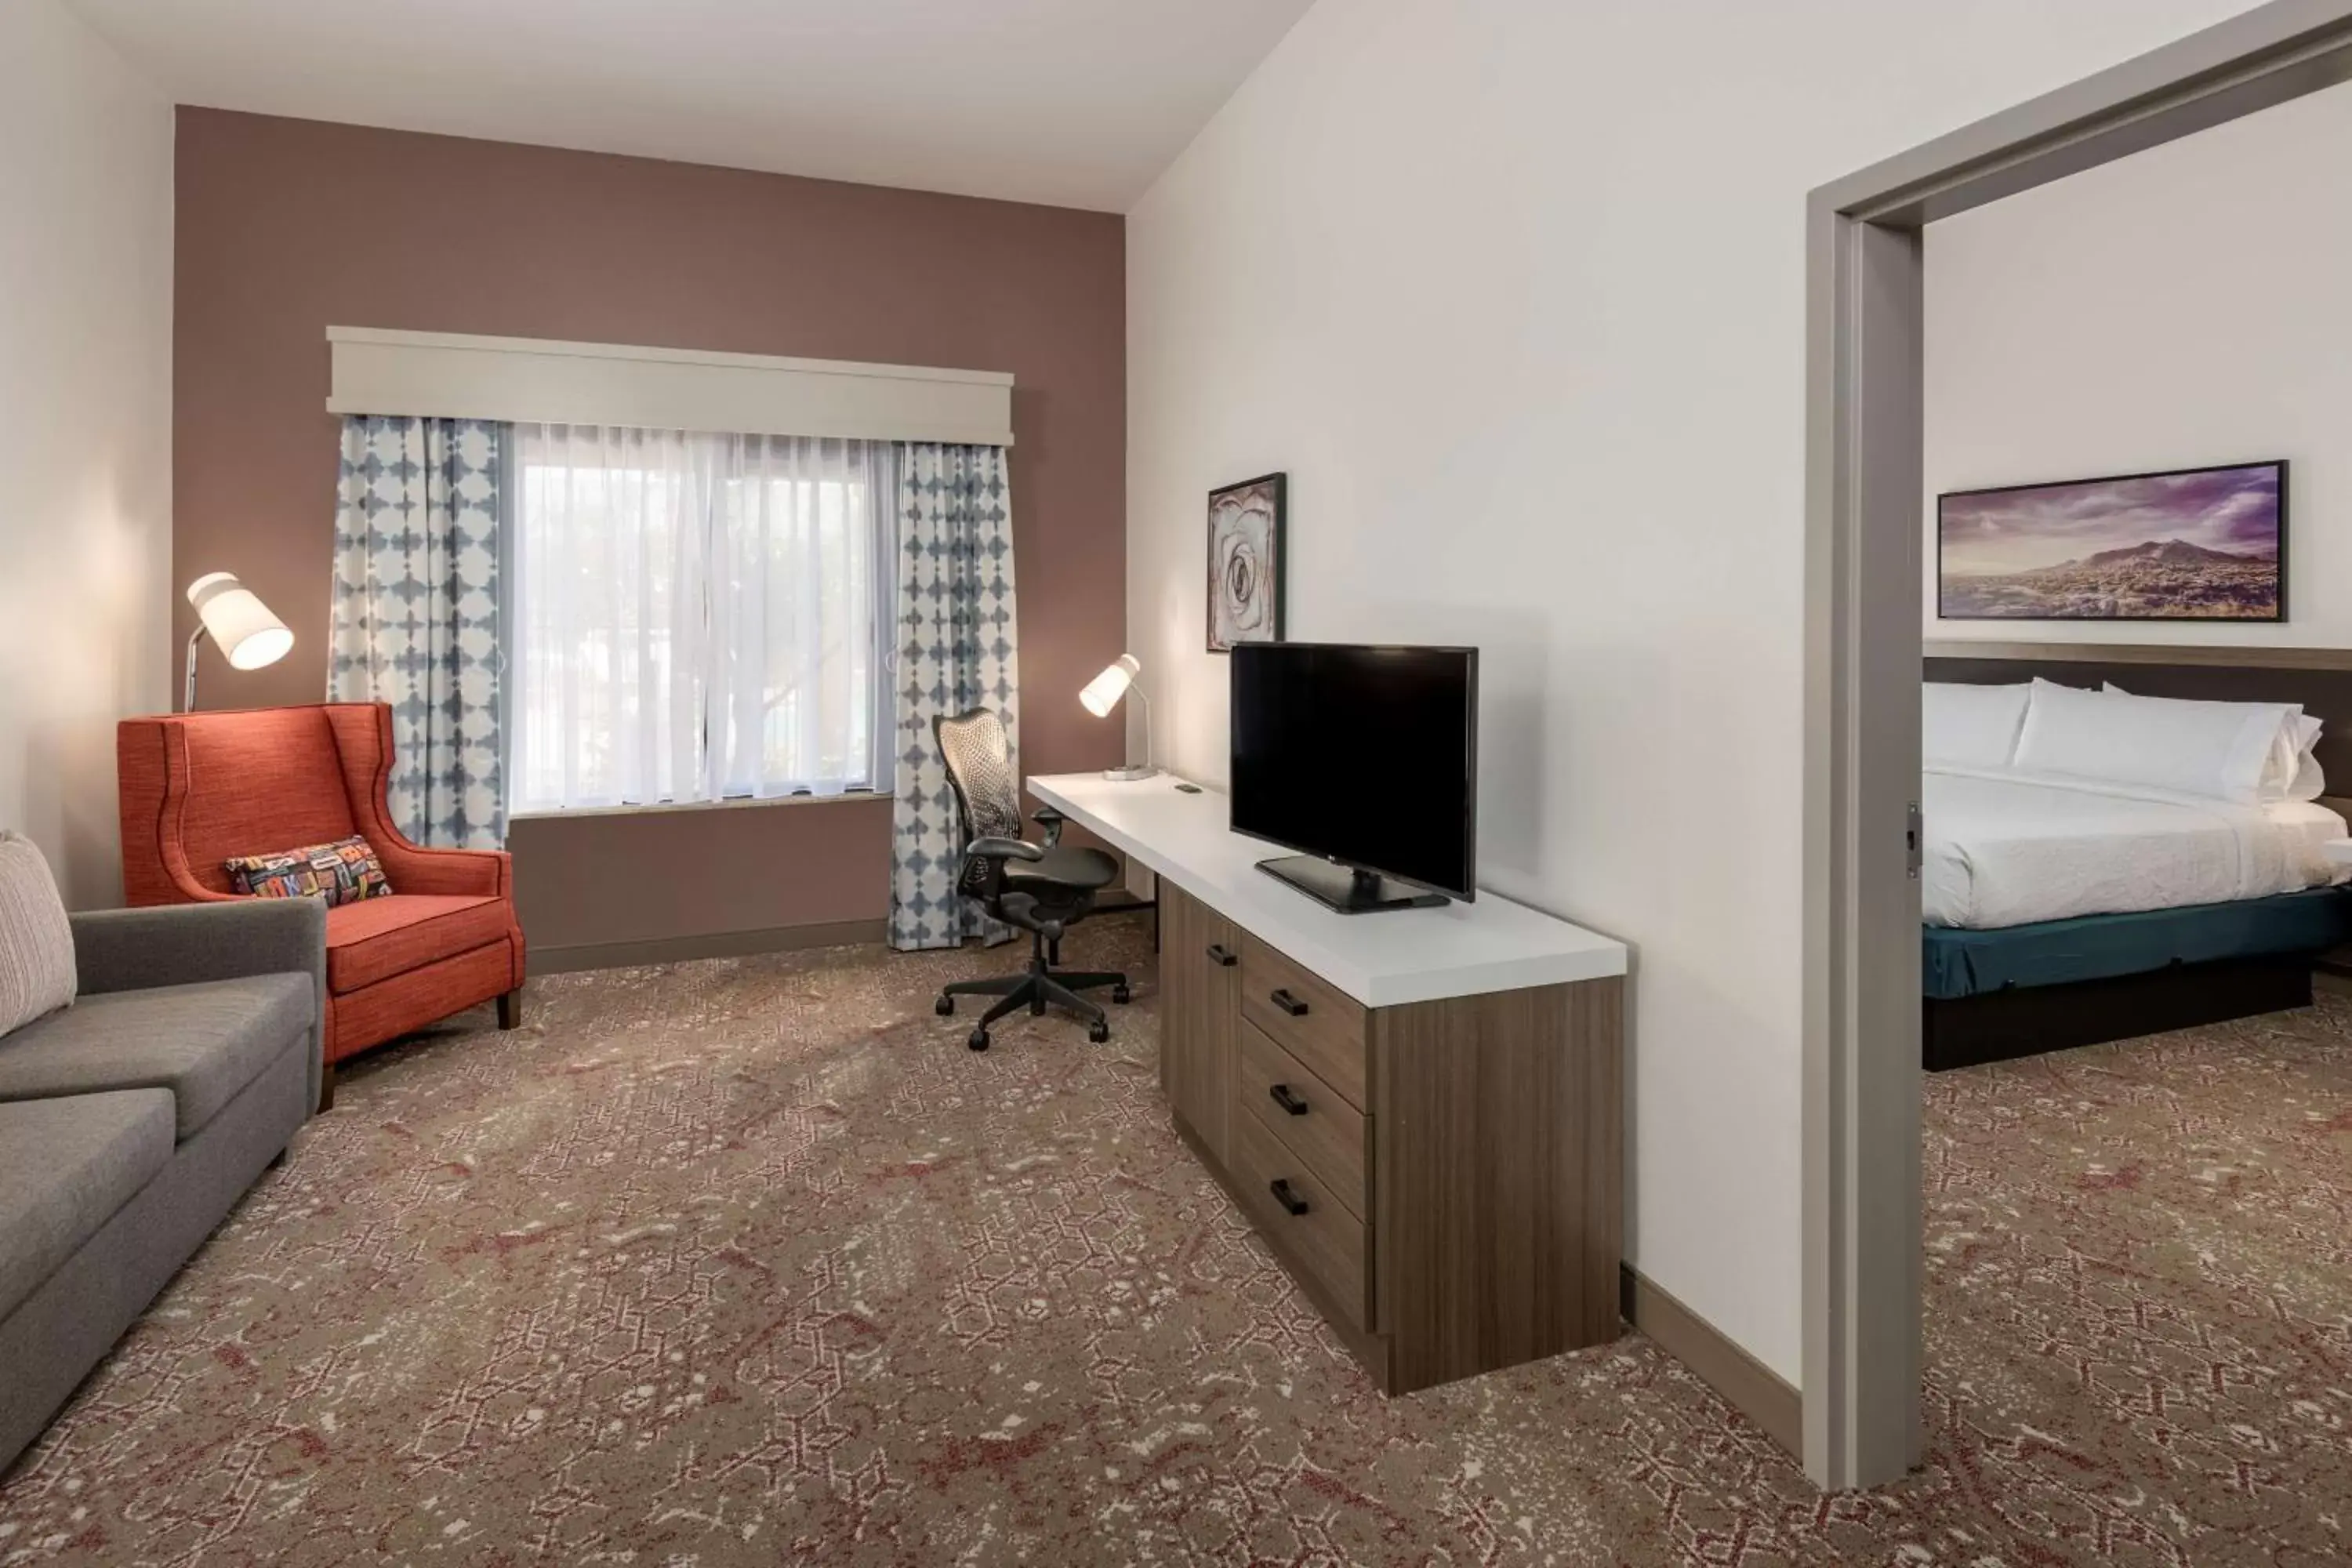 Bedroom, TV/Entertainment Center in Hilton Garden Inn Scottsdale North/Perimeter Center